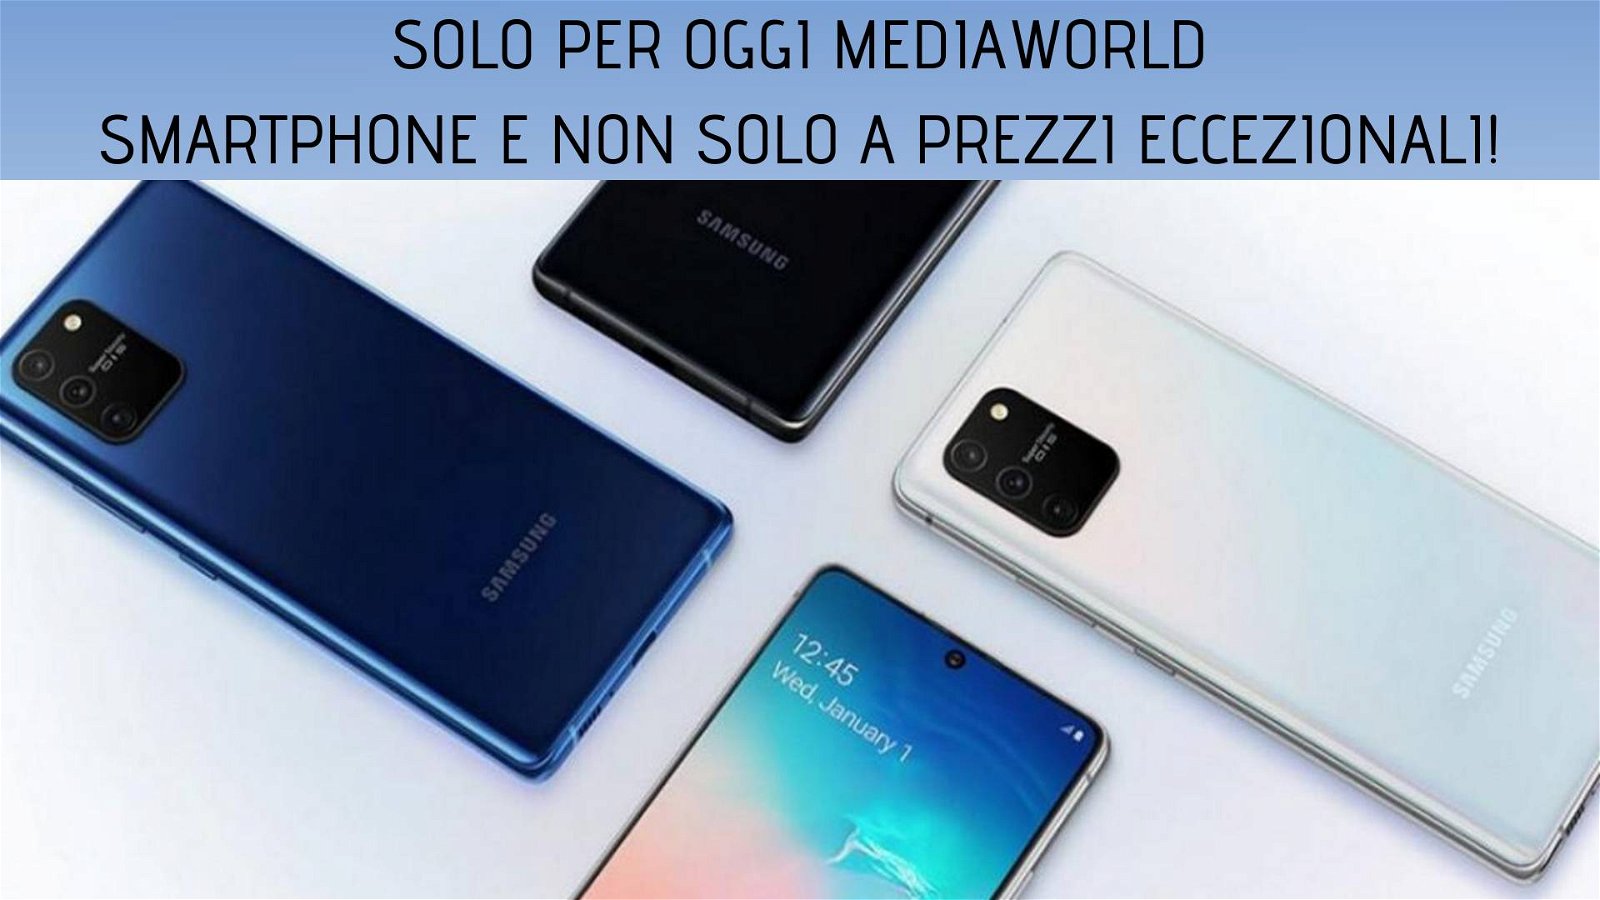 Immagine di Solo per oggi Mediaworld: Samsung Galaxy Note10 Lite a soli 469 euro!